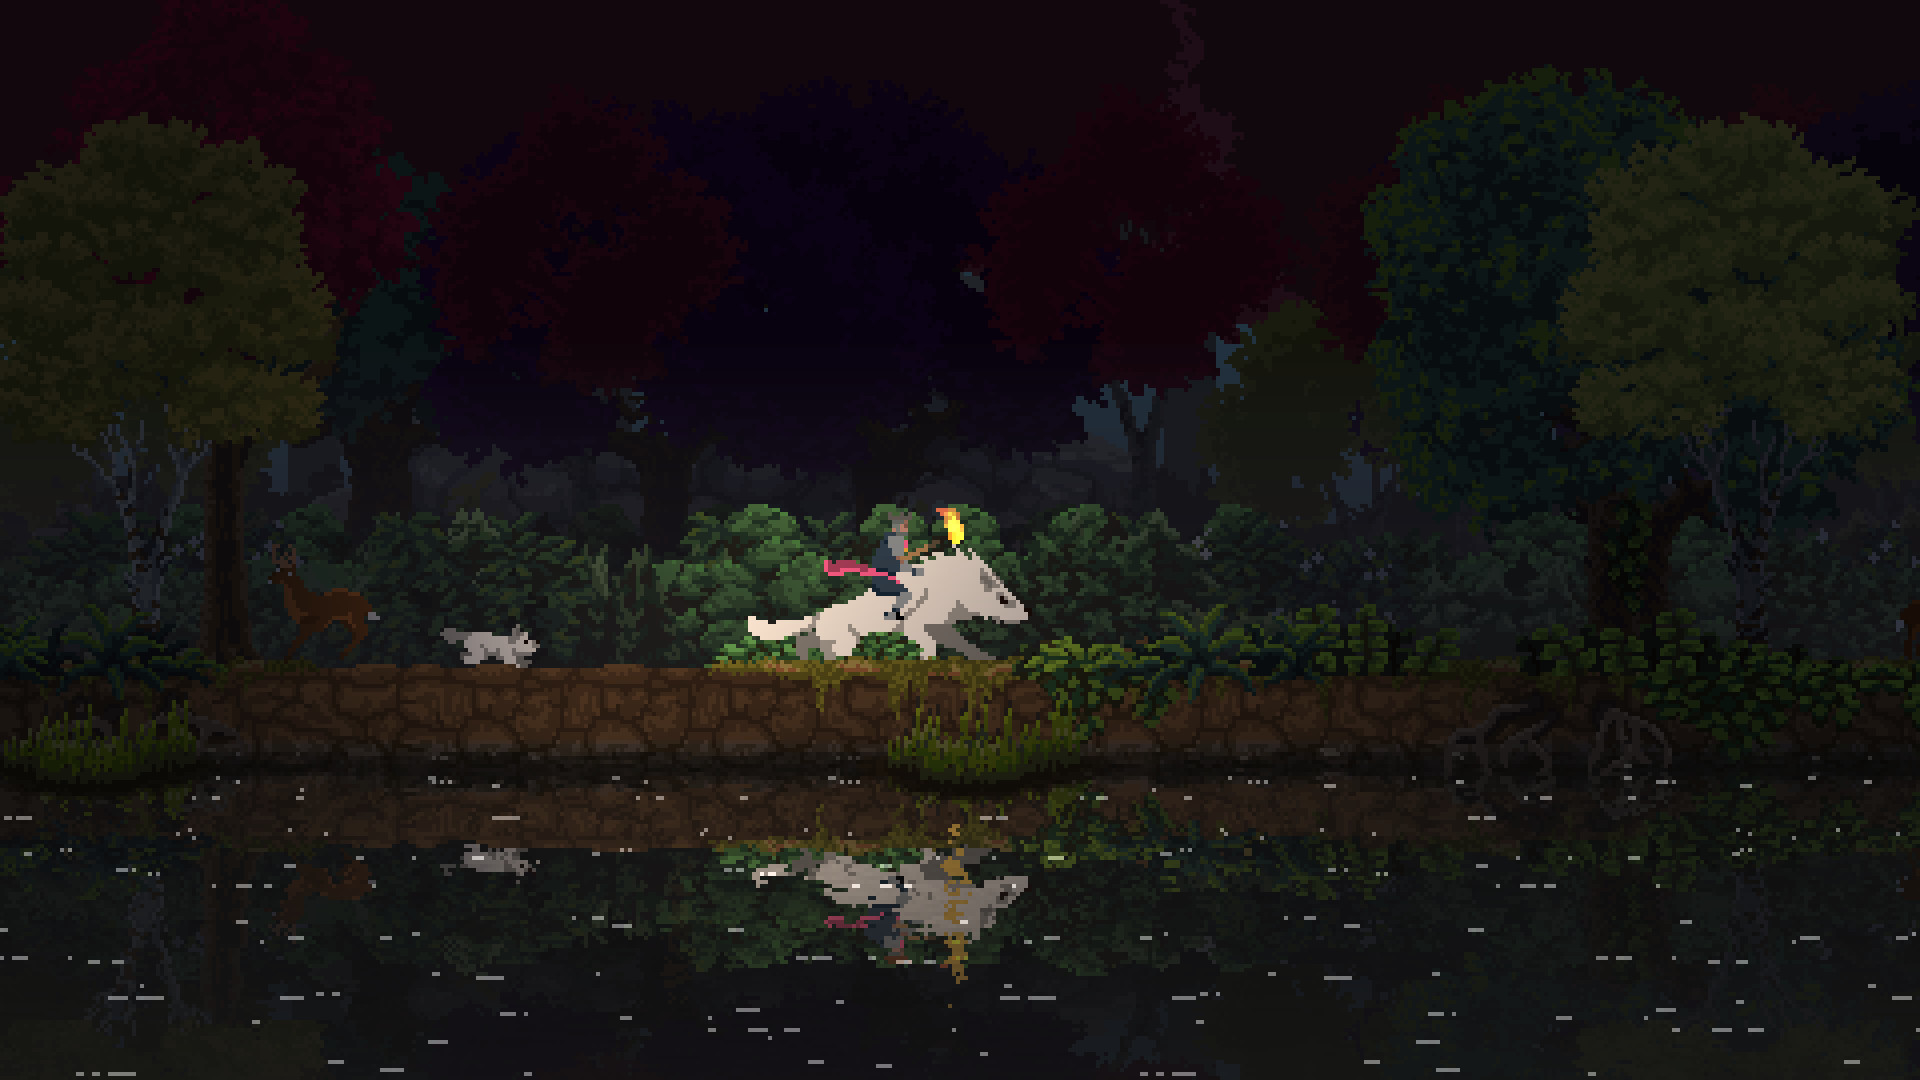 Los mejores juegos de estrategia móvil: Kingdom dos coronas. La imagen muestra a alguien montando un lobo cerca de un río, con un cerdo no muy lejos, todo renderizado en un estilo de arte de píxeles